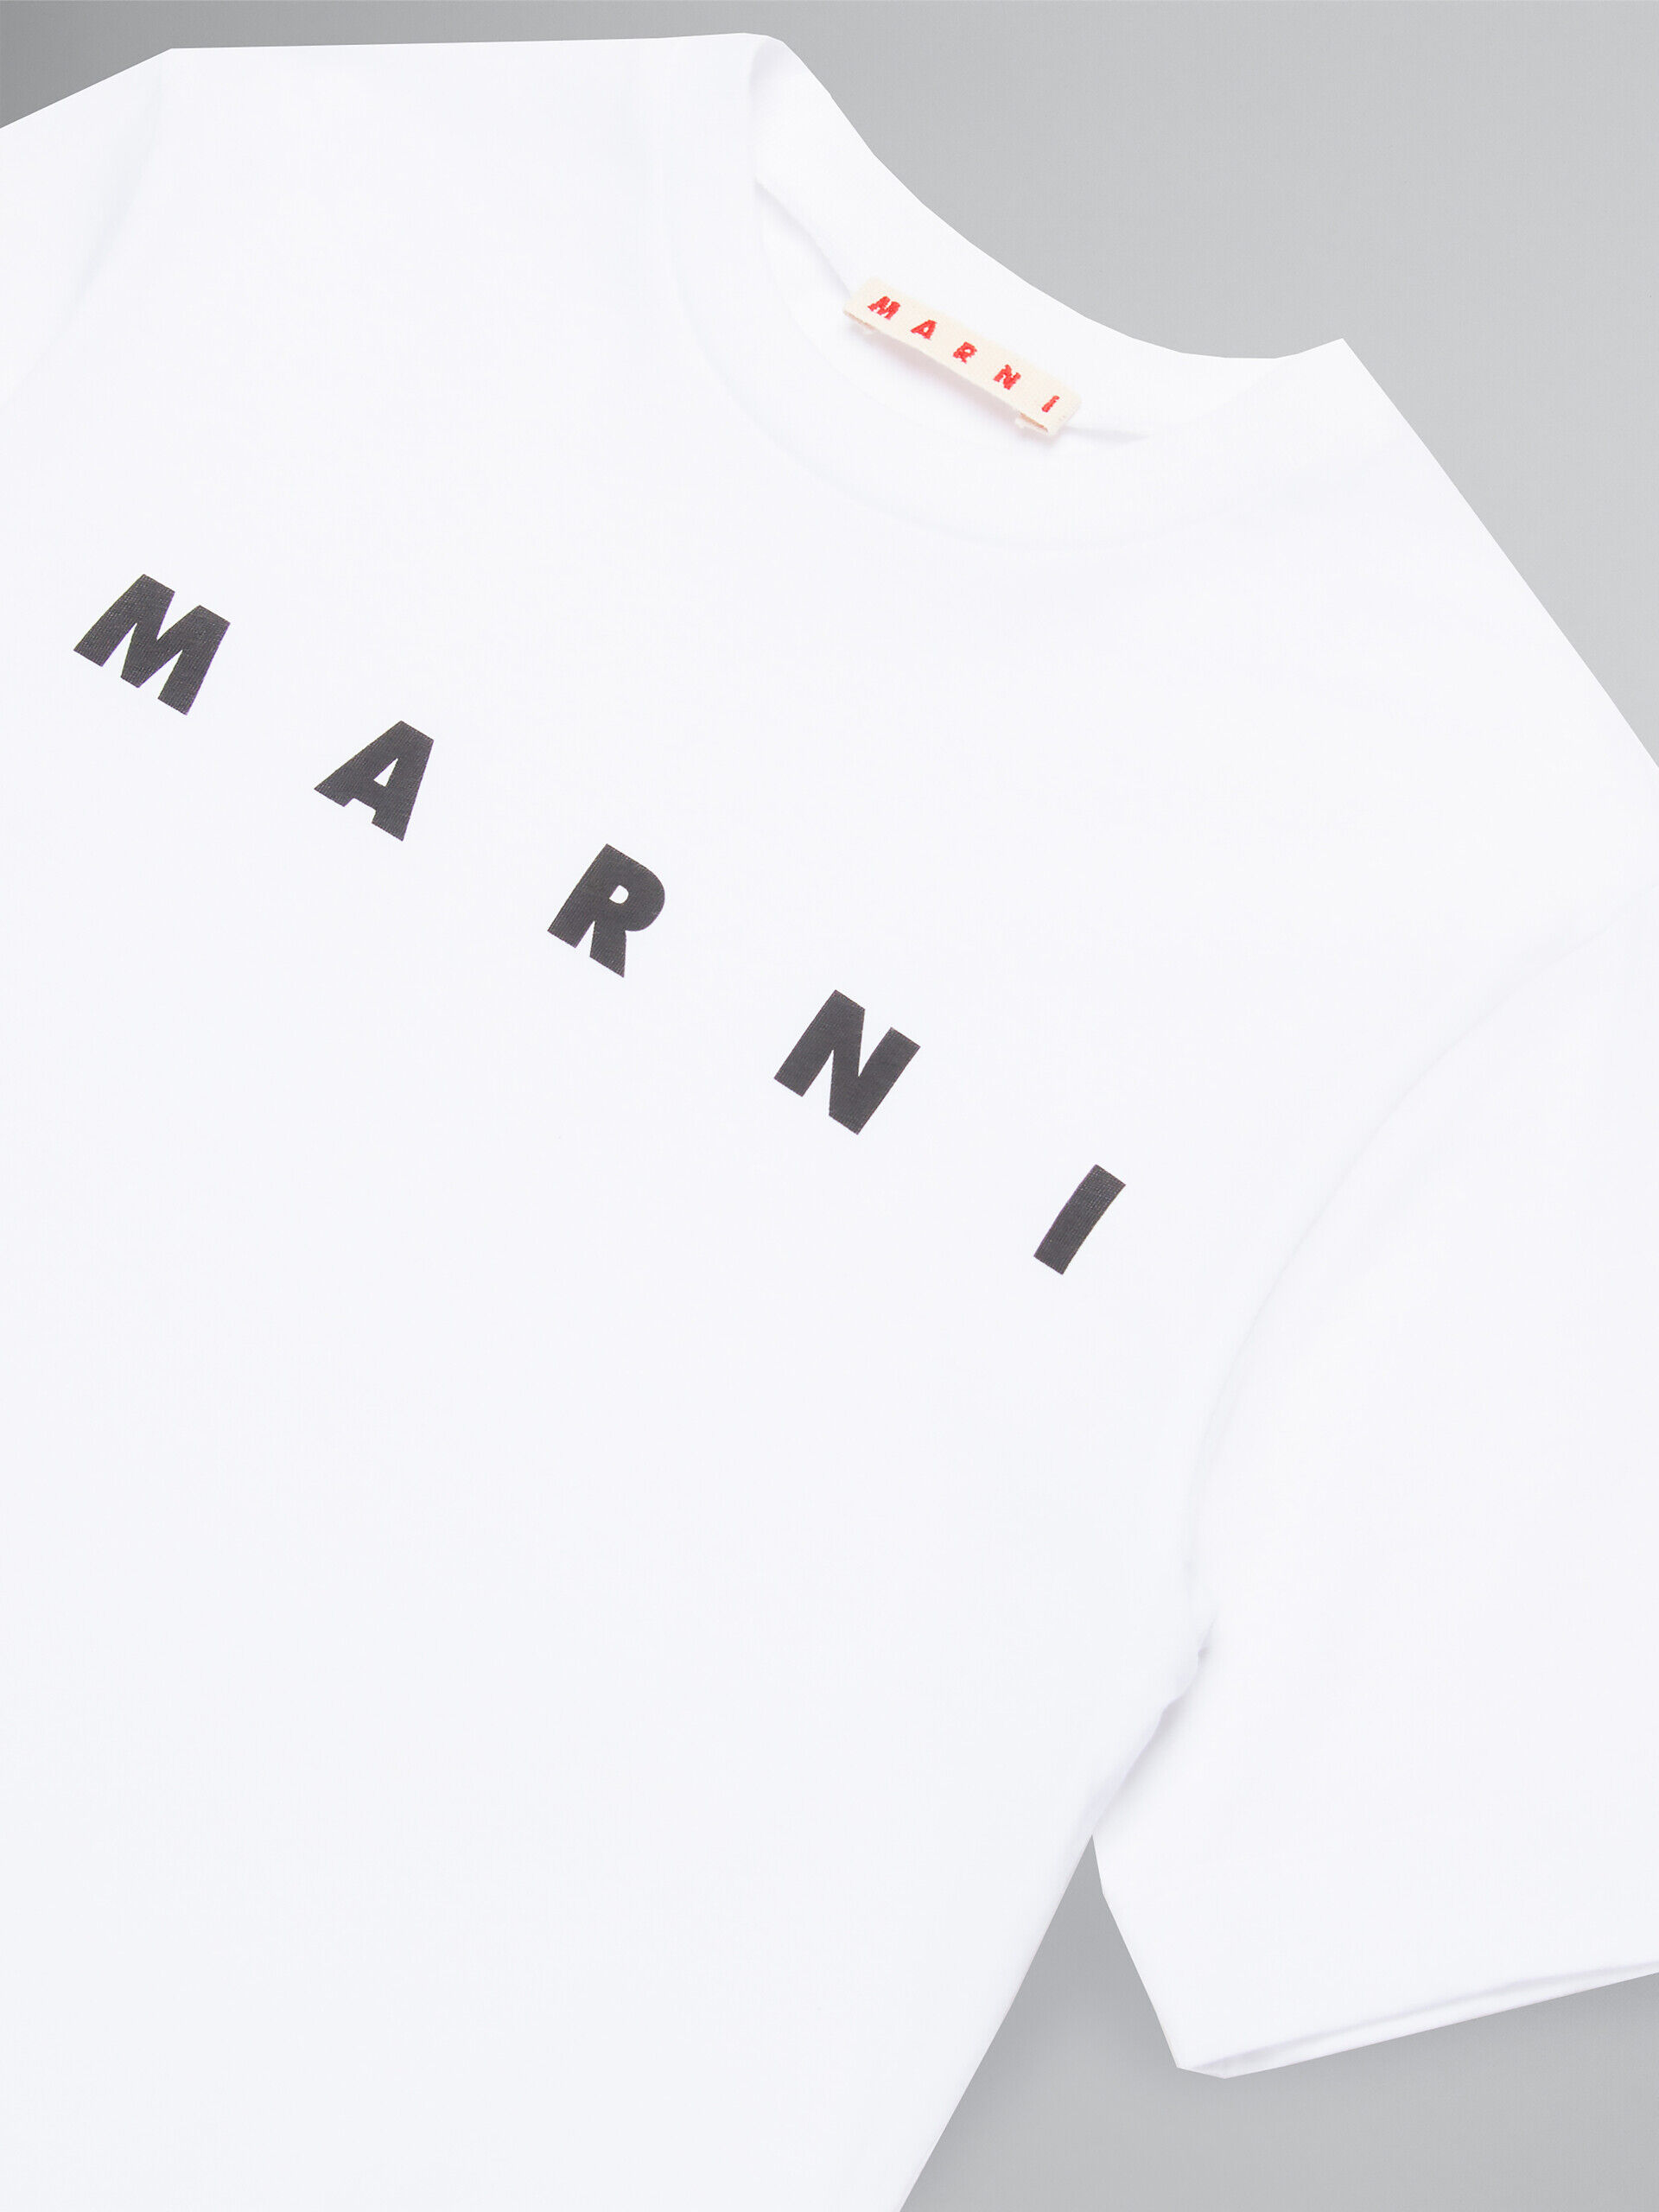 ホワイト ロゴ入り ジャージー製Tシャツ | Marni